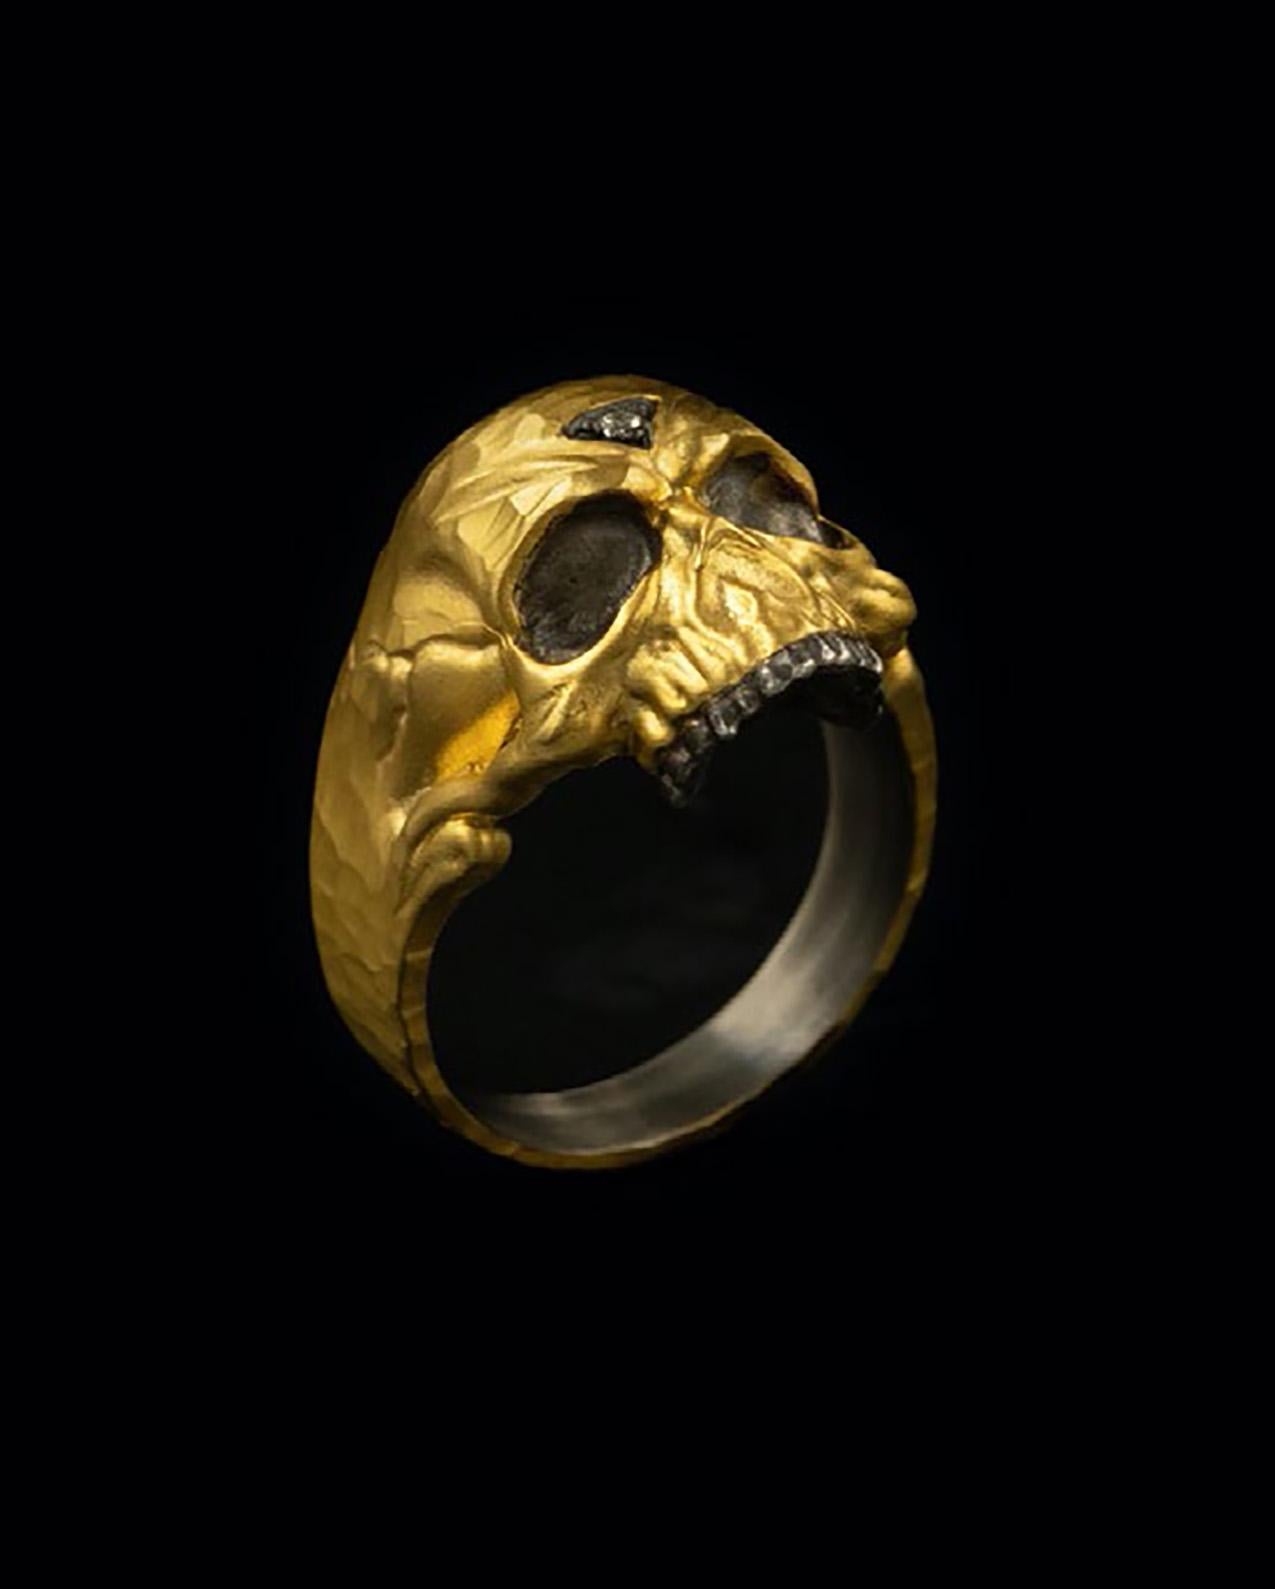 24k skull ring